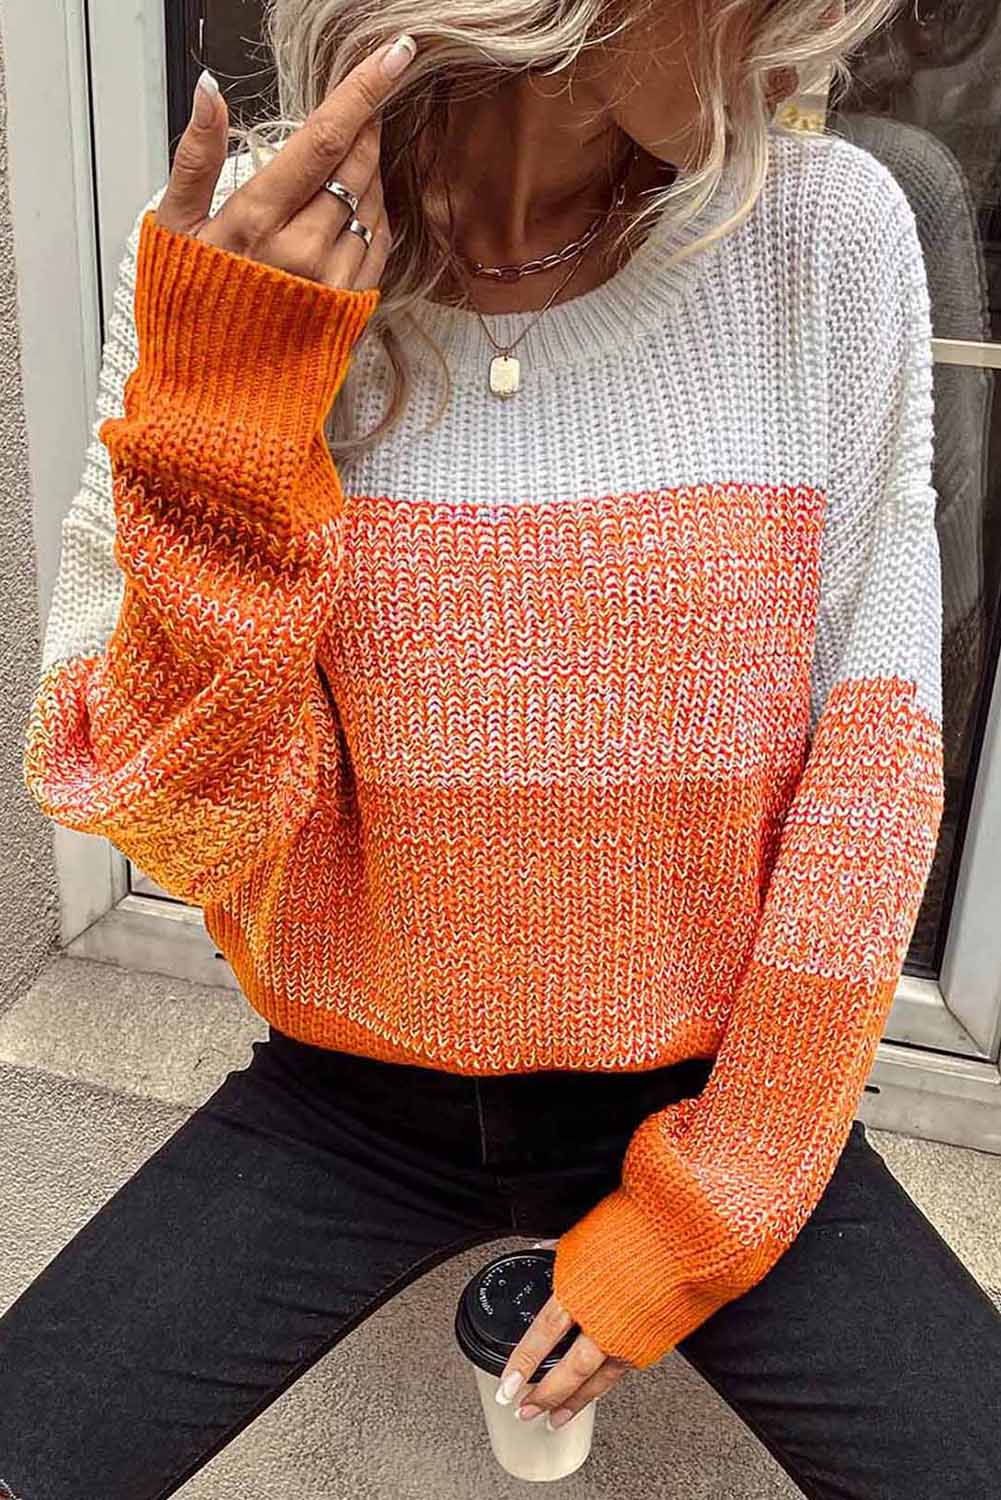 Pulover s rebrastim obrubom spuštenih ramena u narančastoj boji